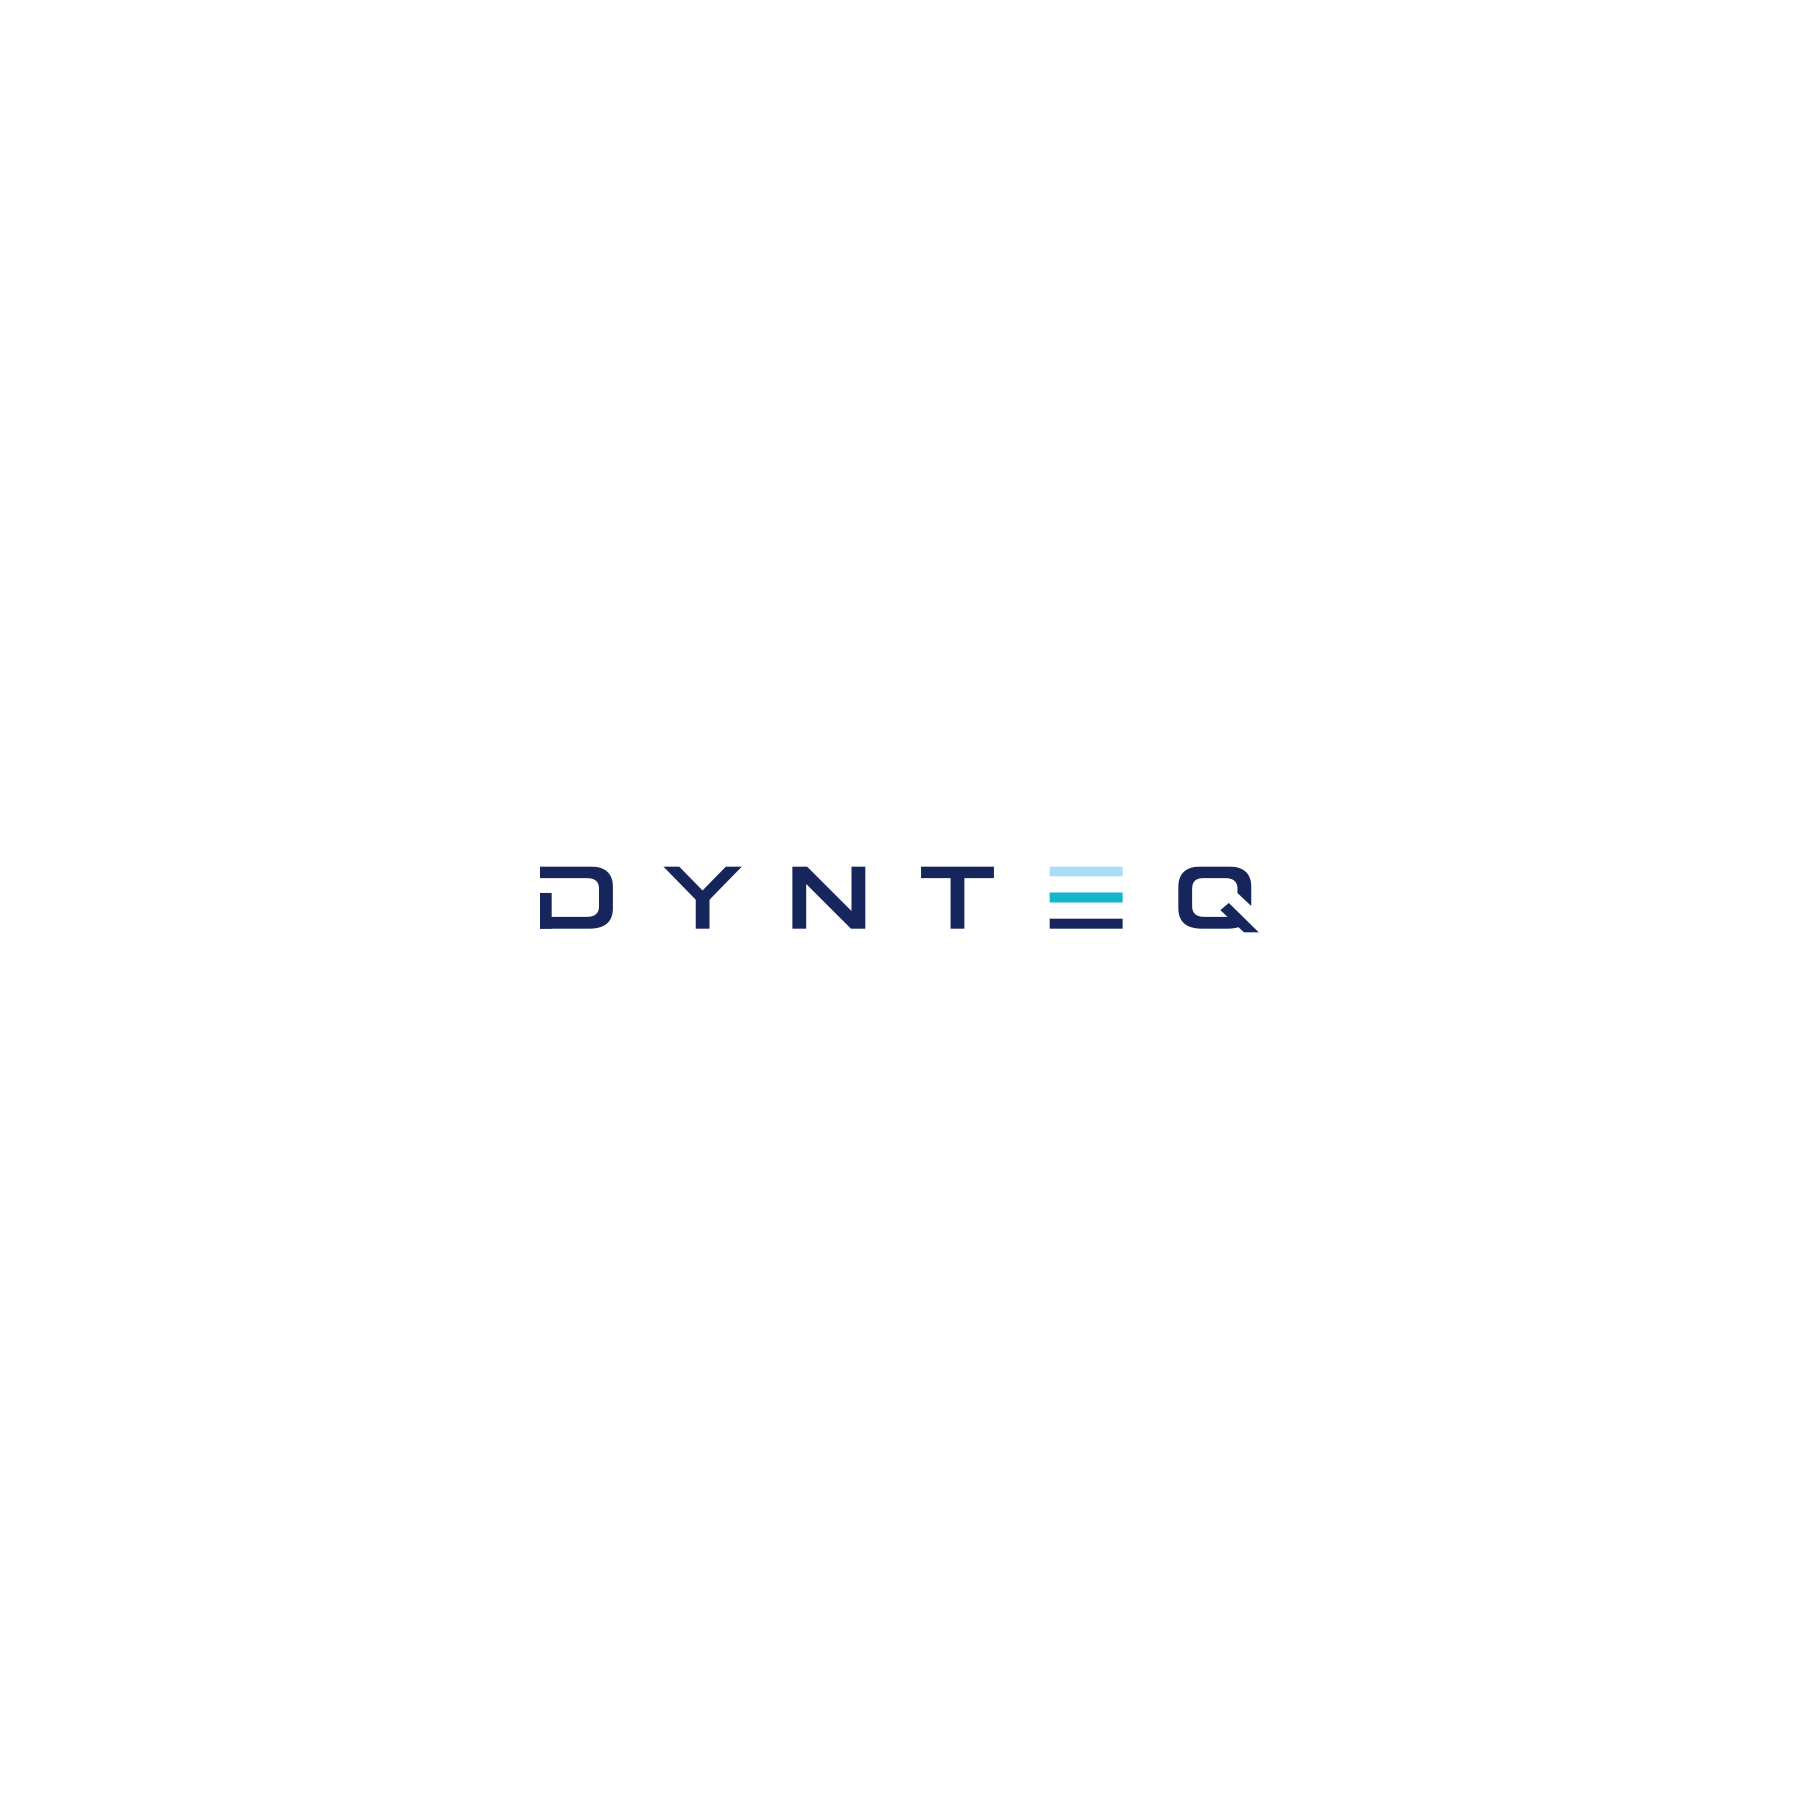 Dynteq Logo design